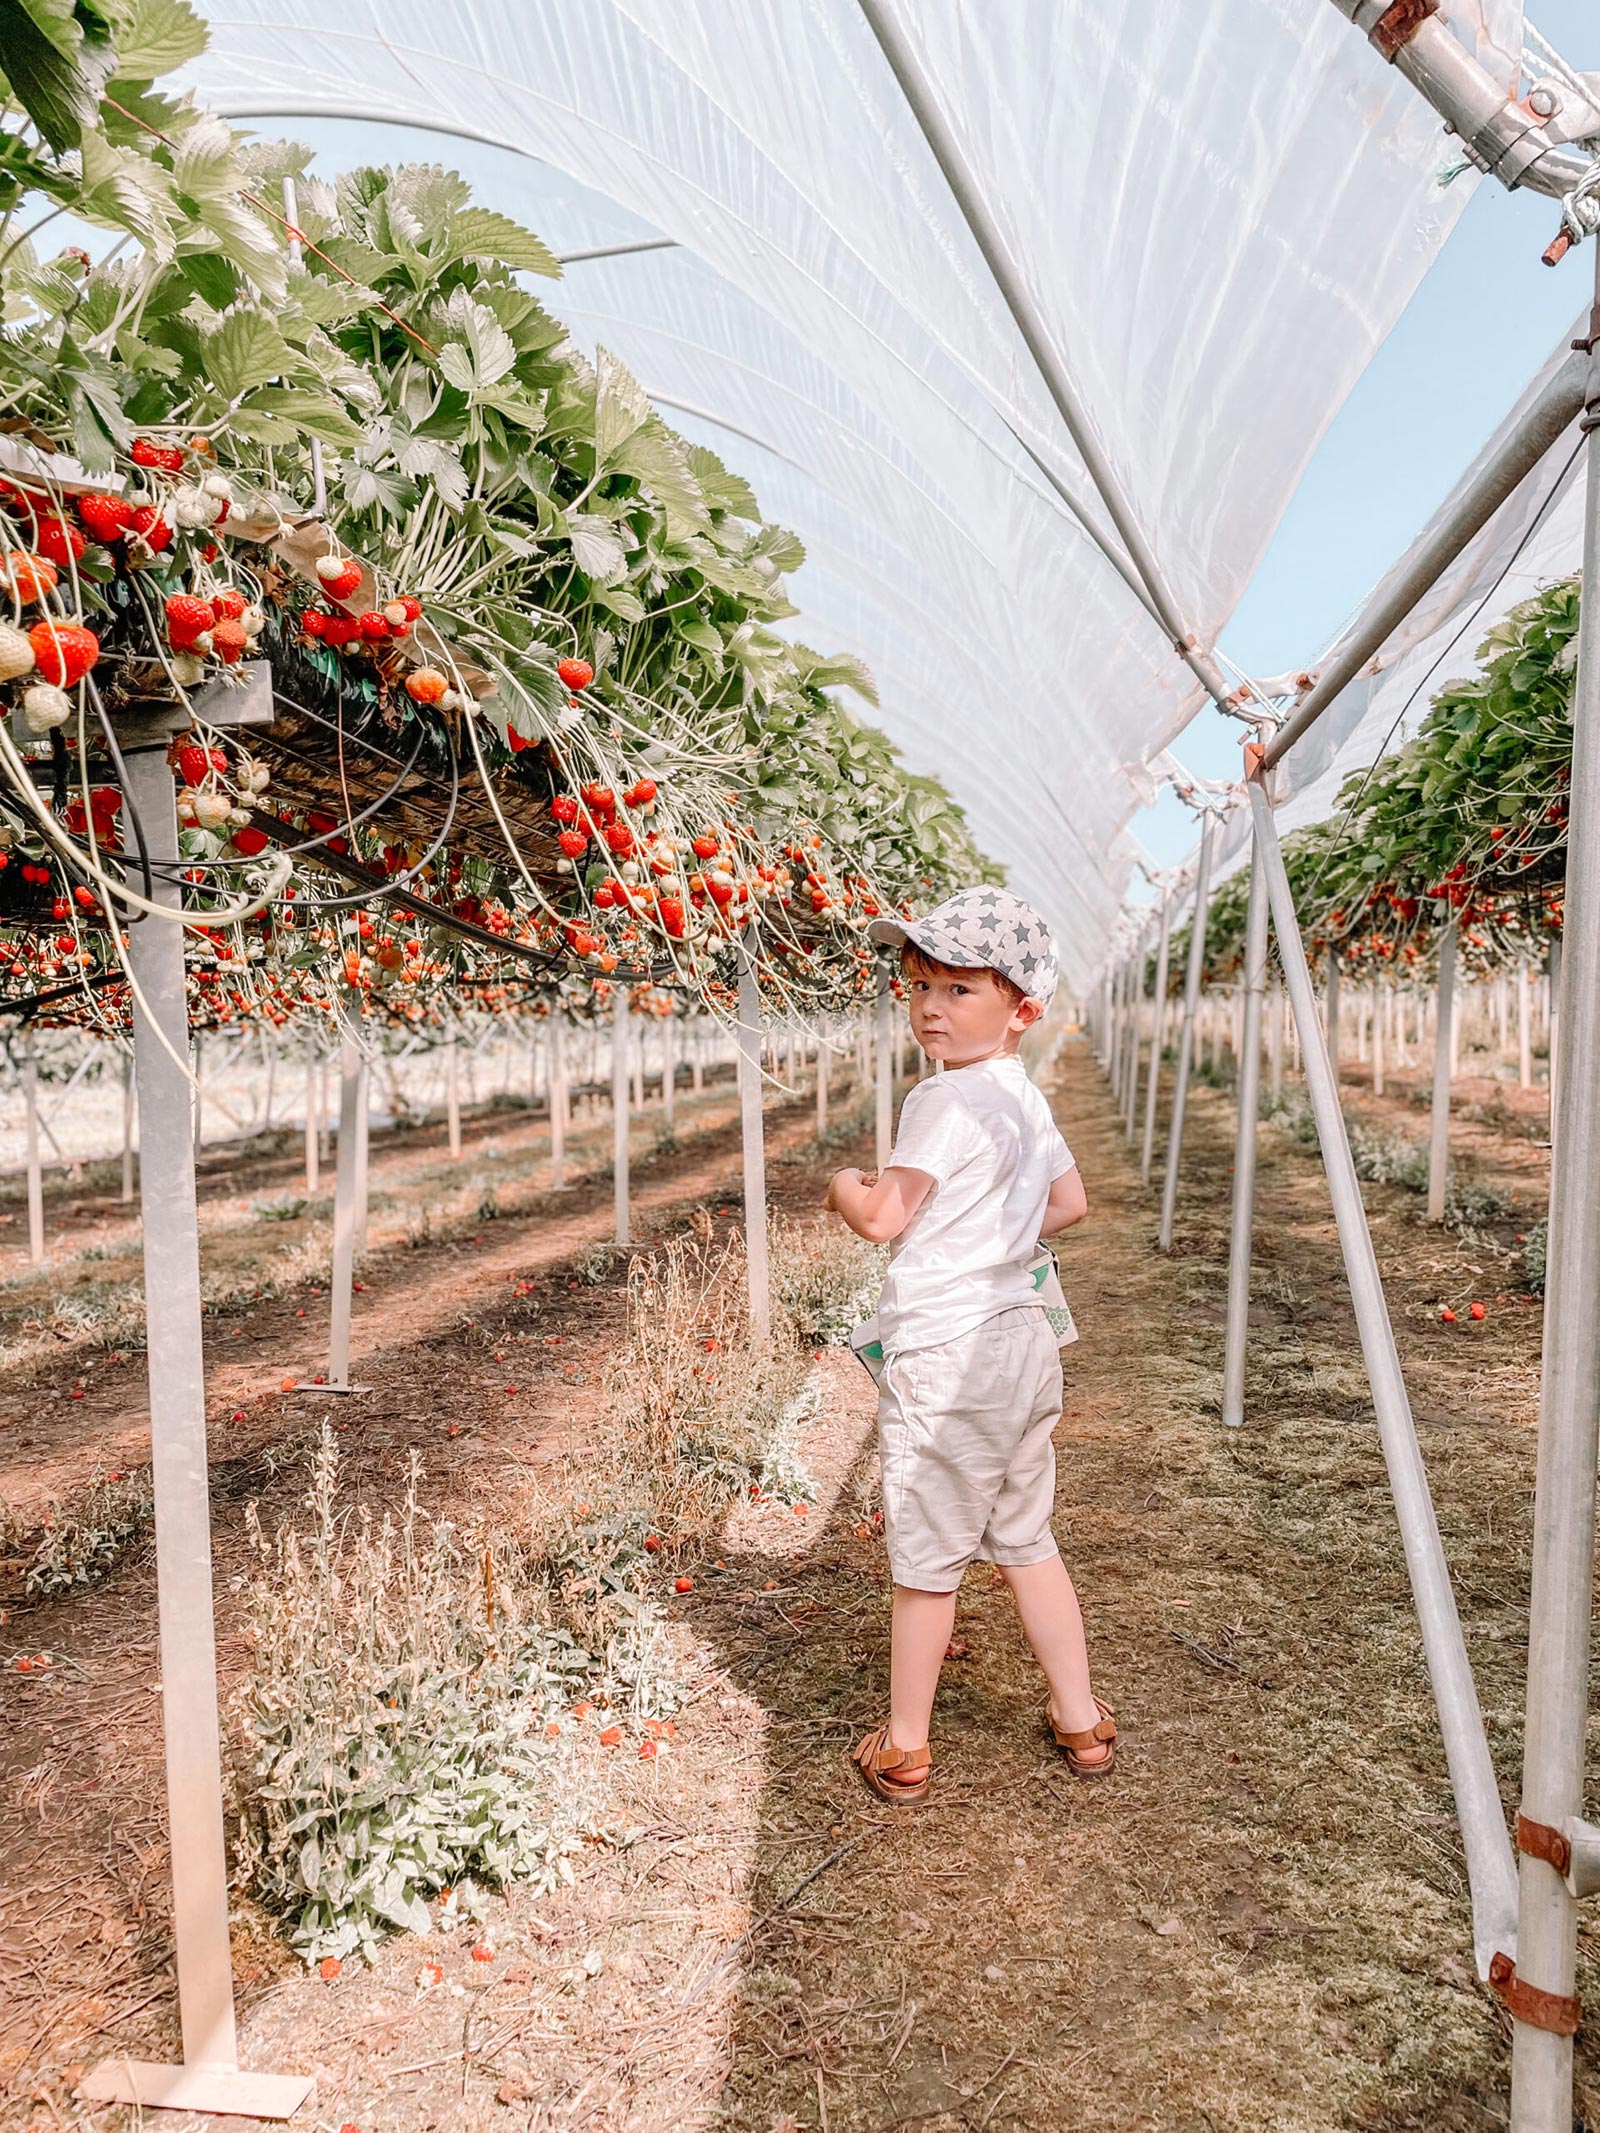 Max picking strawberries